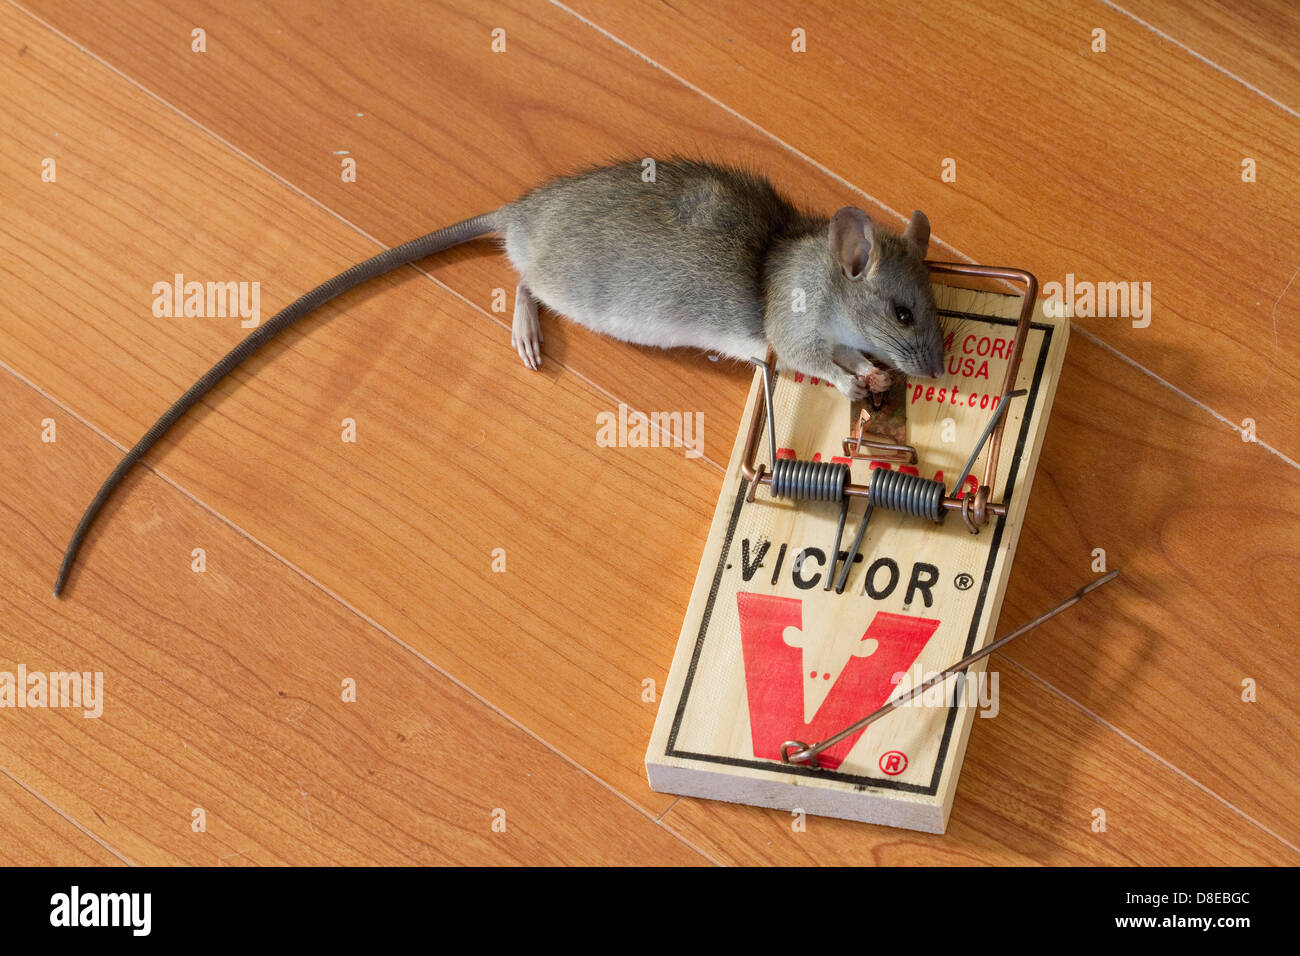 Victor Rat Trap, Original